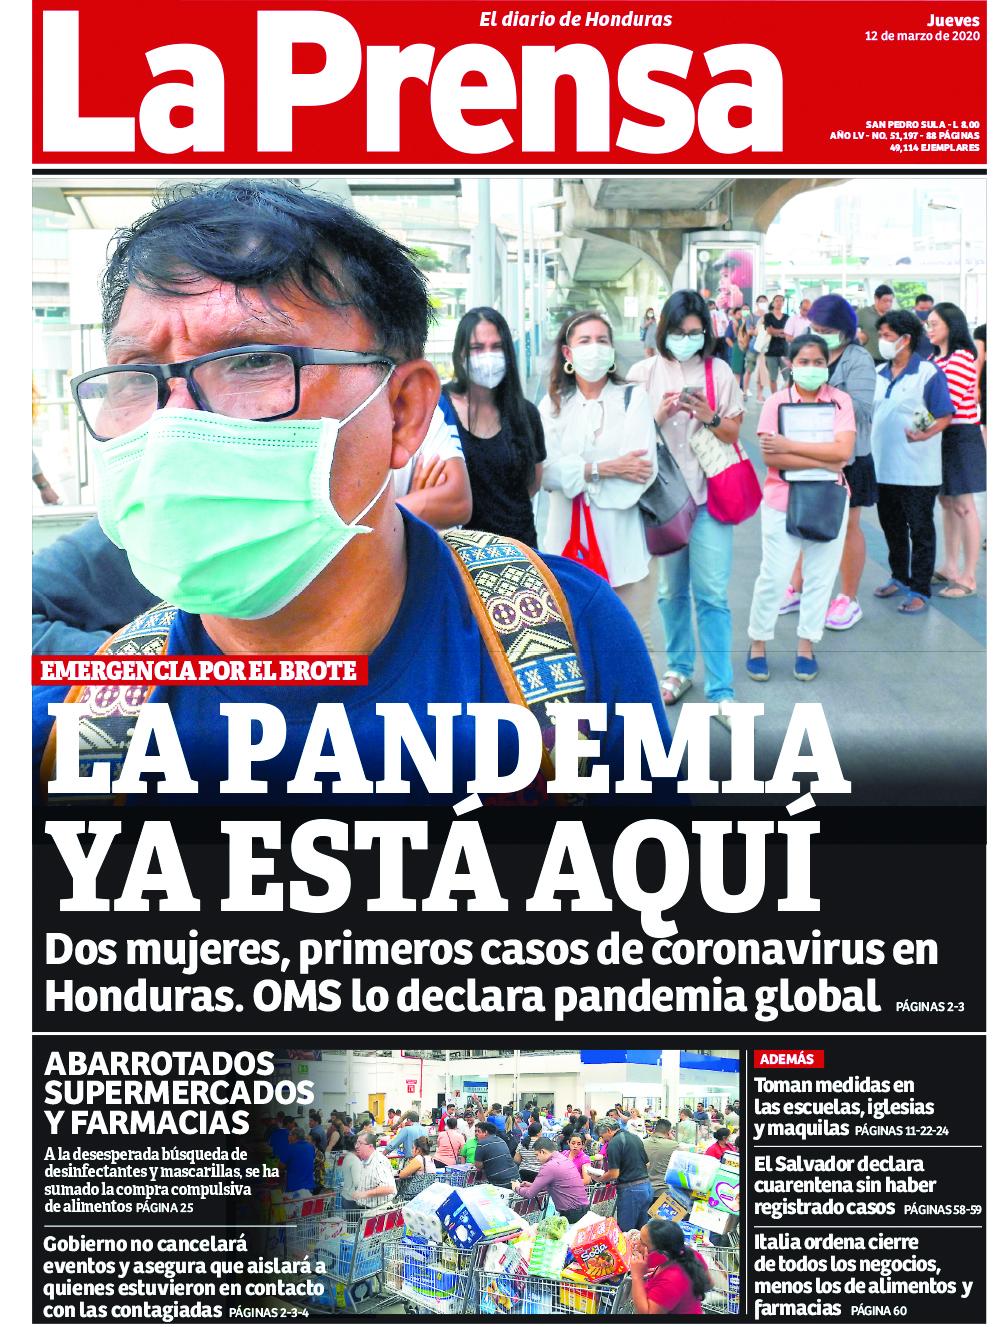 Marzo - 2020. Alertó a los hondureños sobre la llegada del covid-19, al mismo tiempo que era declarada pandemia.